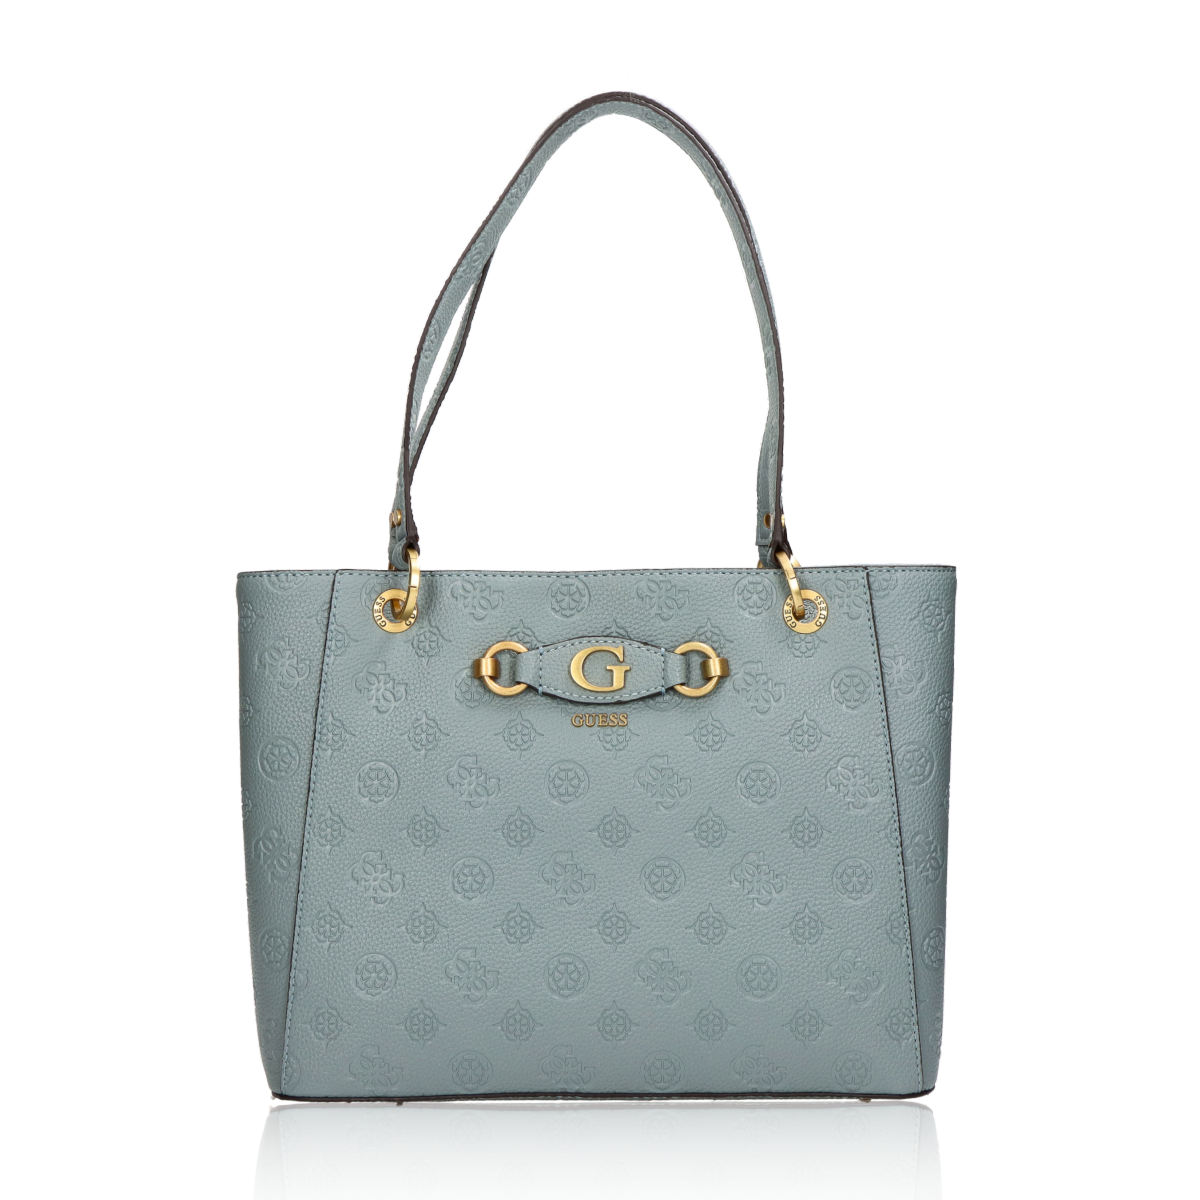 Guess dámská elegantní kabelka - šedo modrá - One size